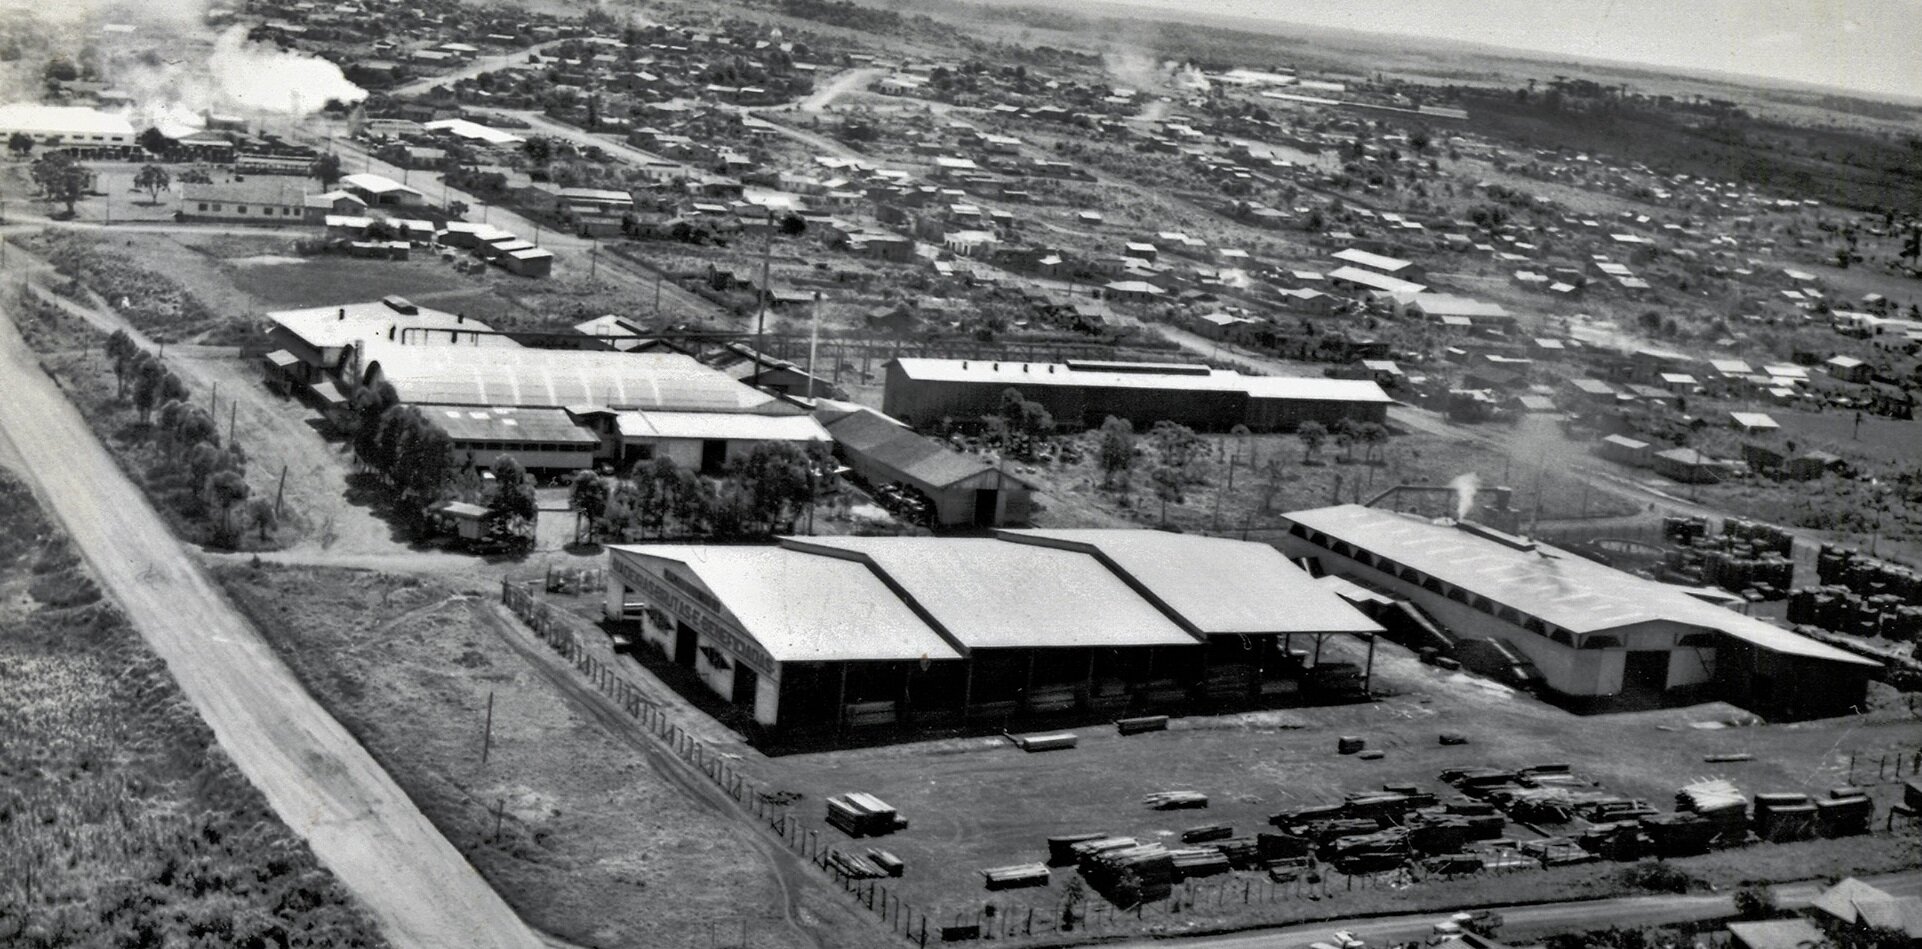 Vista aérea do bairro São Cristóvão - 1972